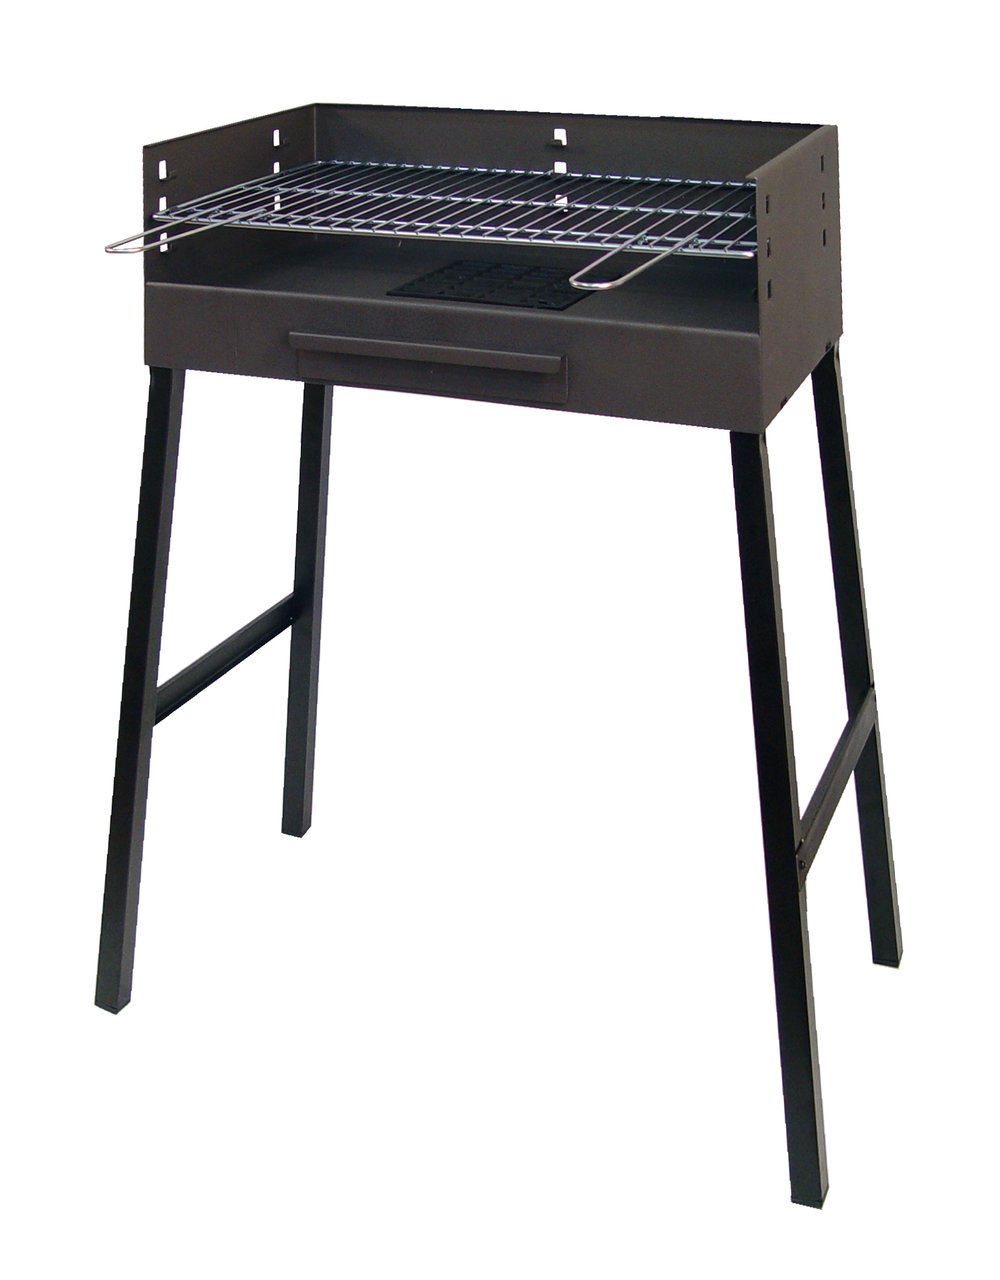 IMEX EL ZORRO 71630 BBQ Grill, Stainless Steel, 76 x 41 cm.